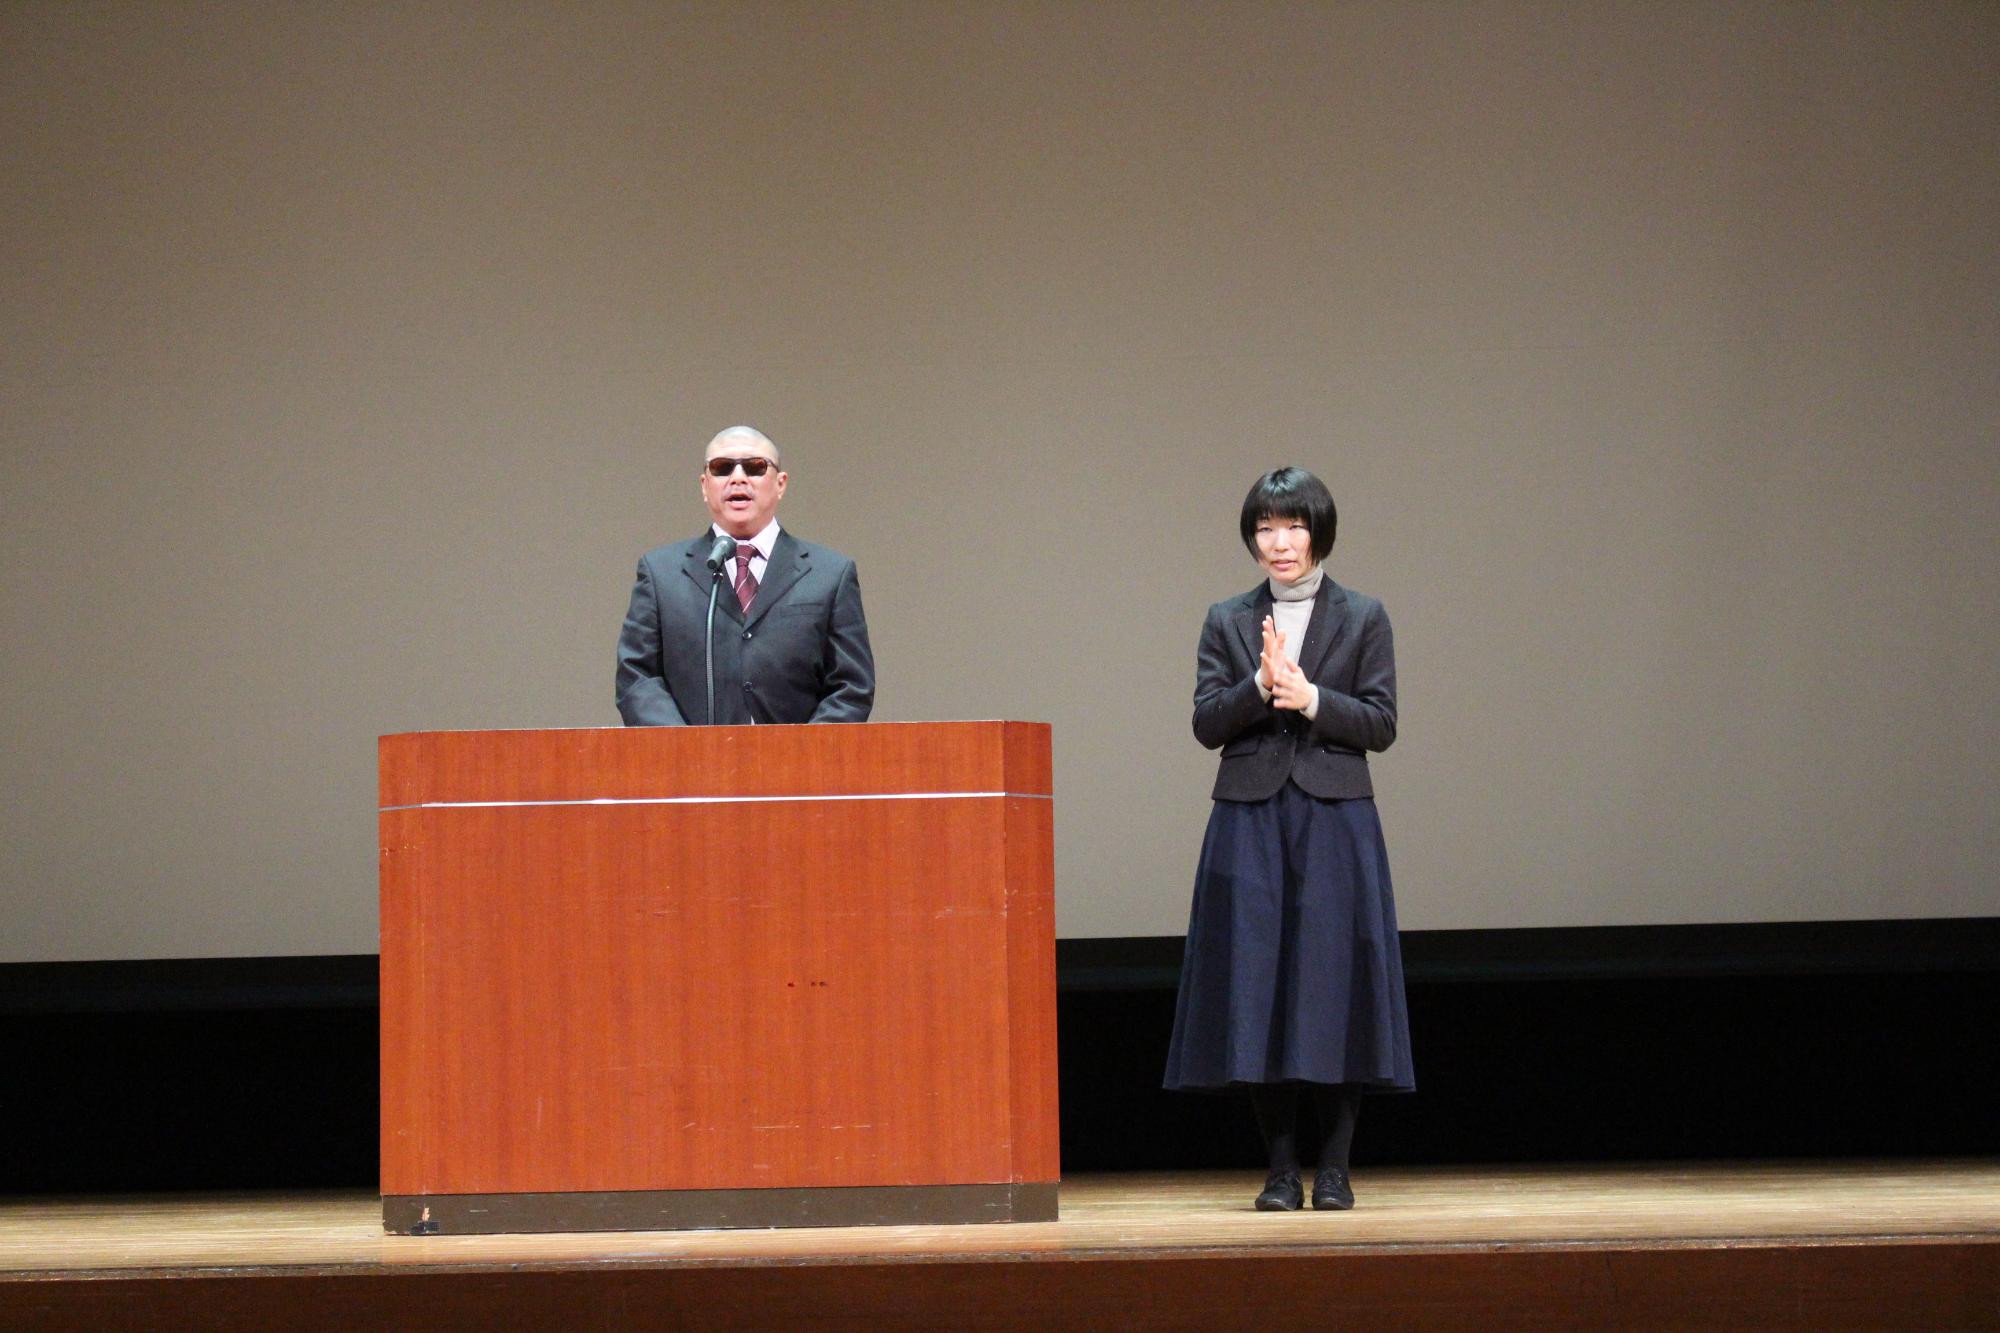 演台の後ろに立って話す辻本会長と、その横で手話をしている女性の写真